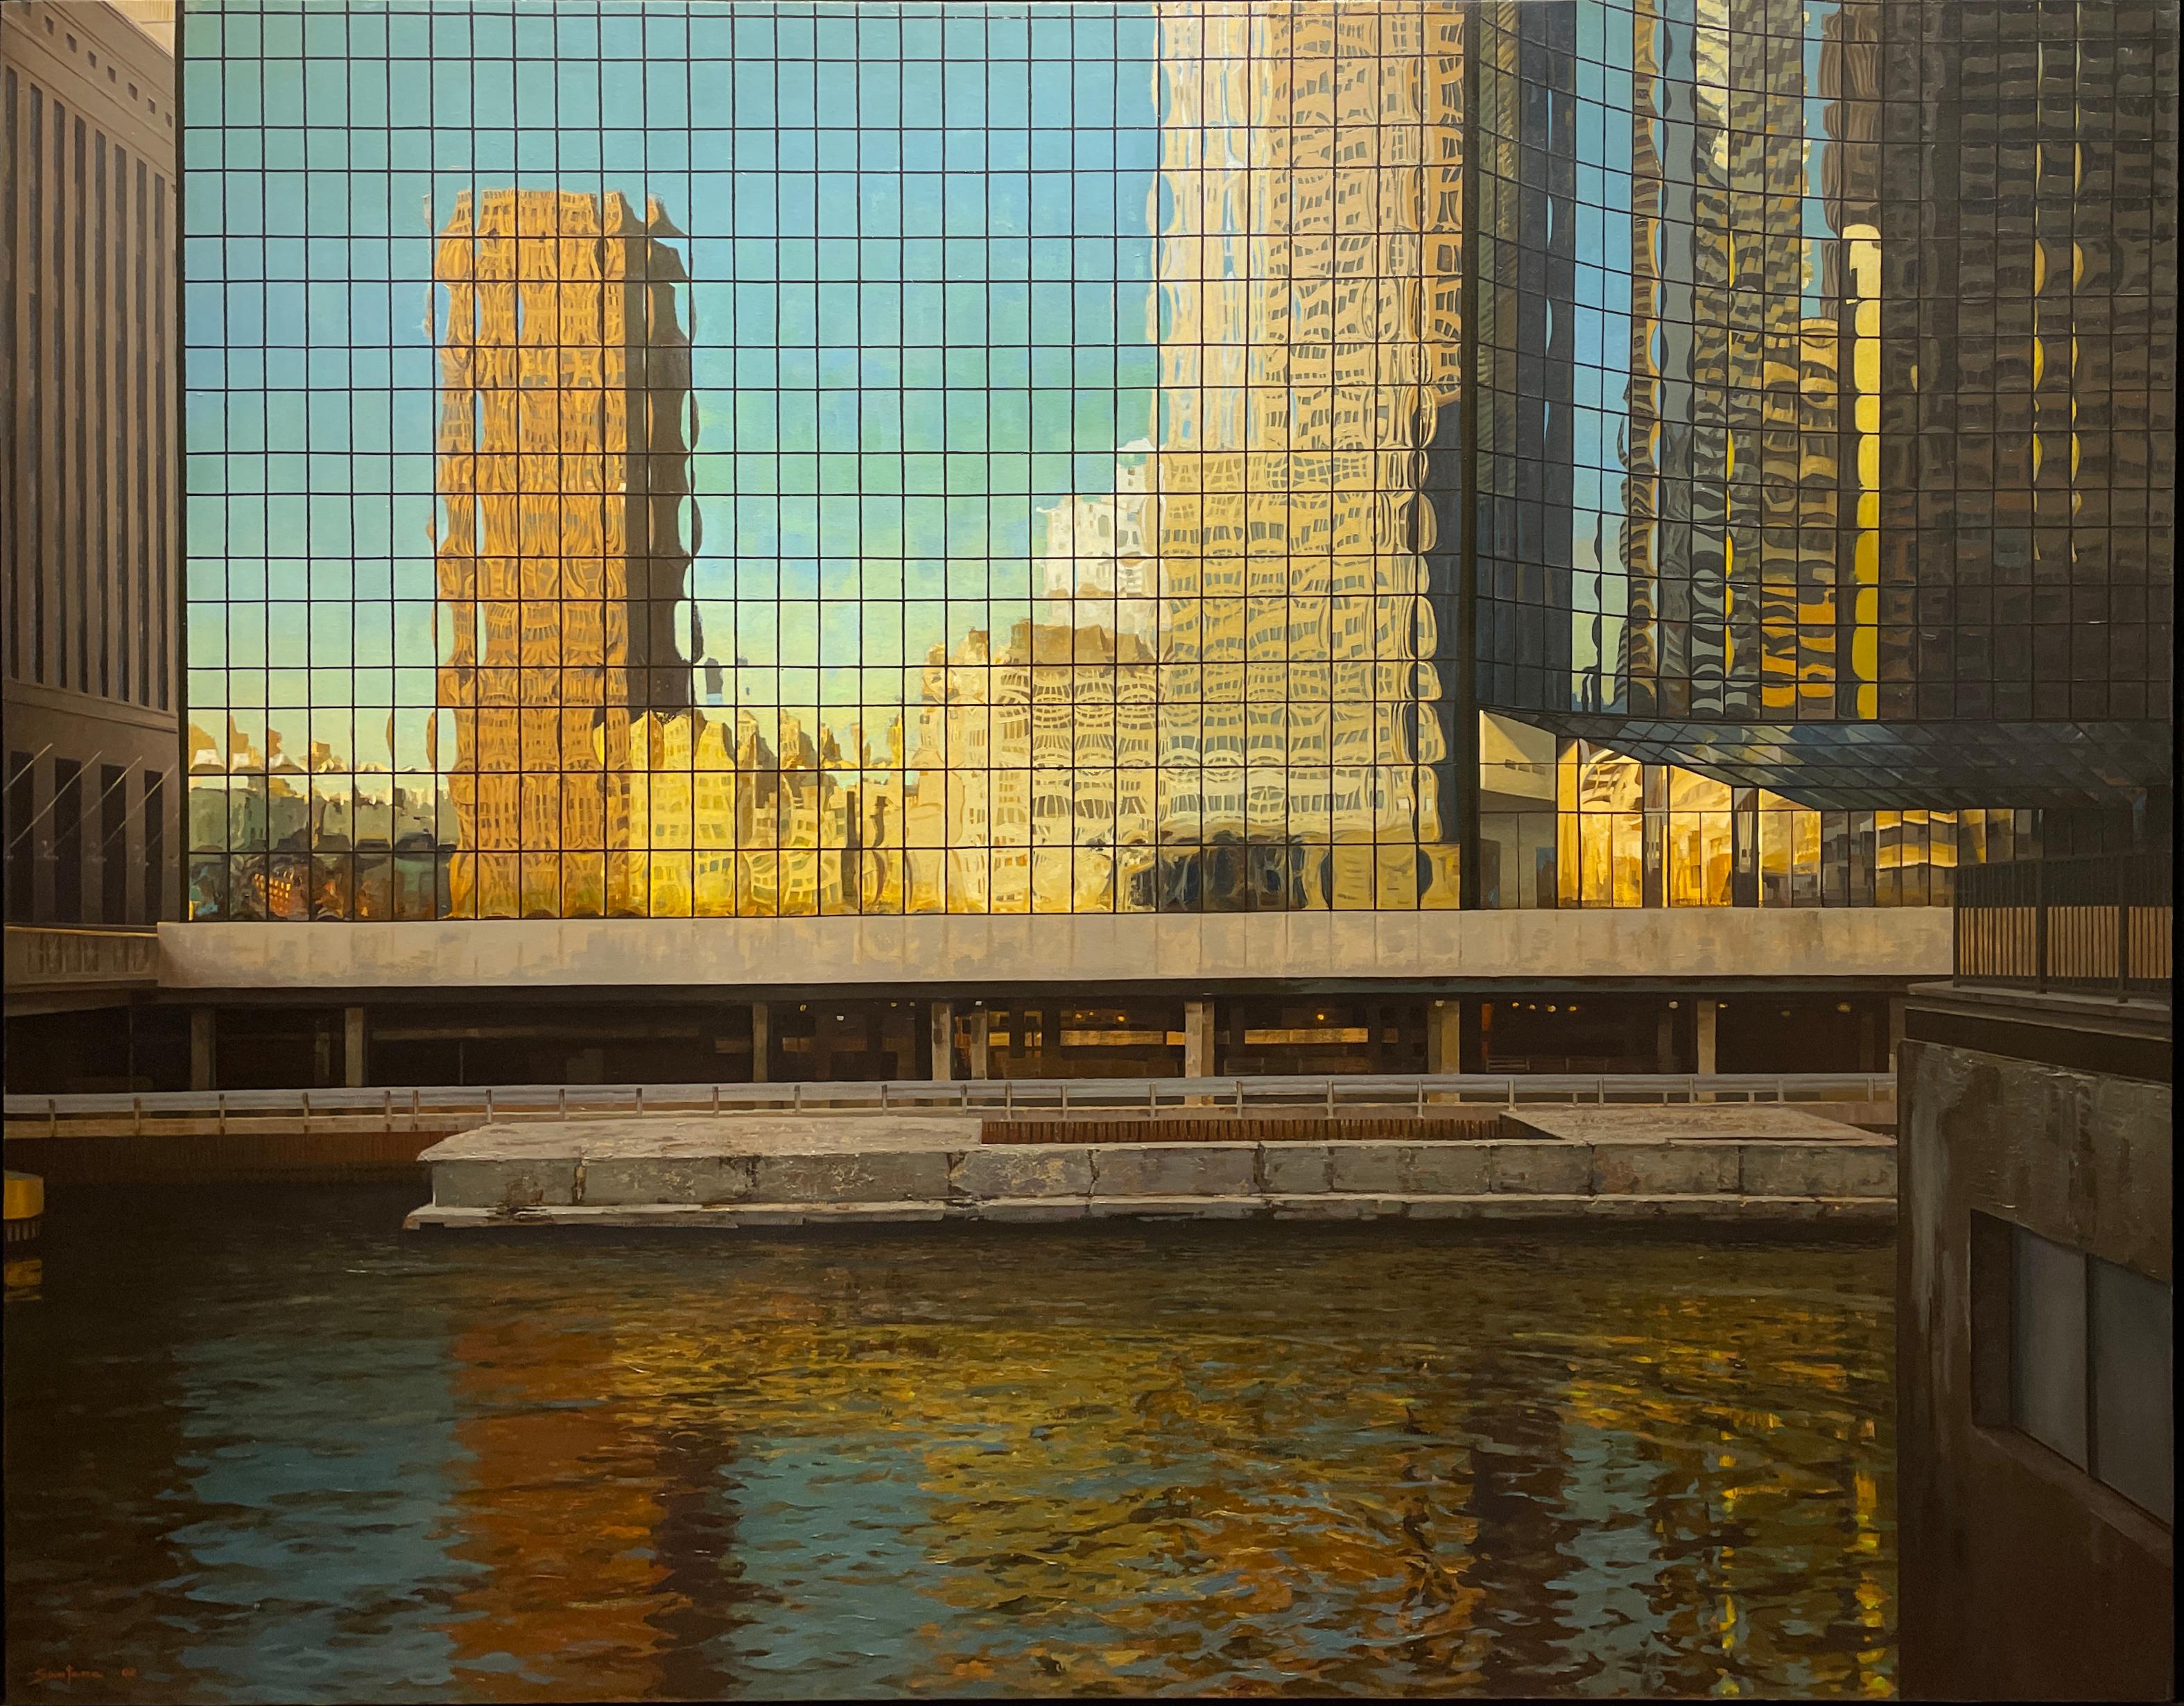 Enrique Santana Landscape Painting - Deconstruction- Chicago Loop Architecture Reflecting on Building, Oil on Linen